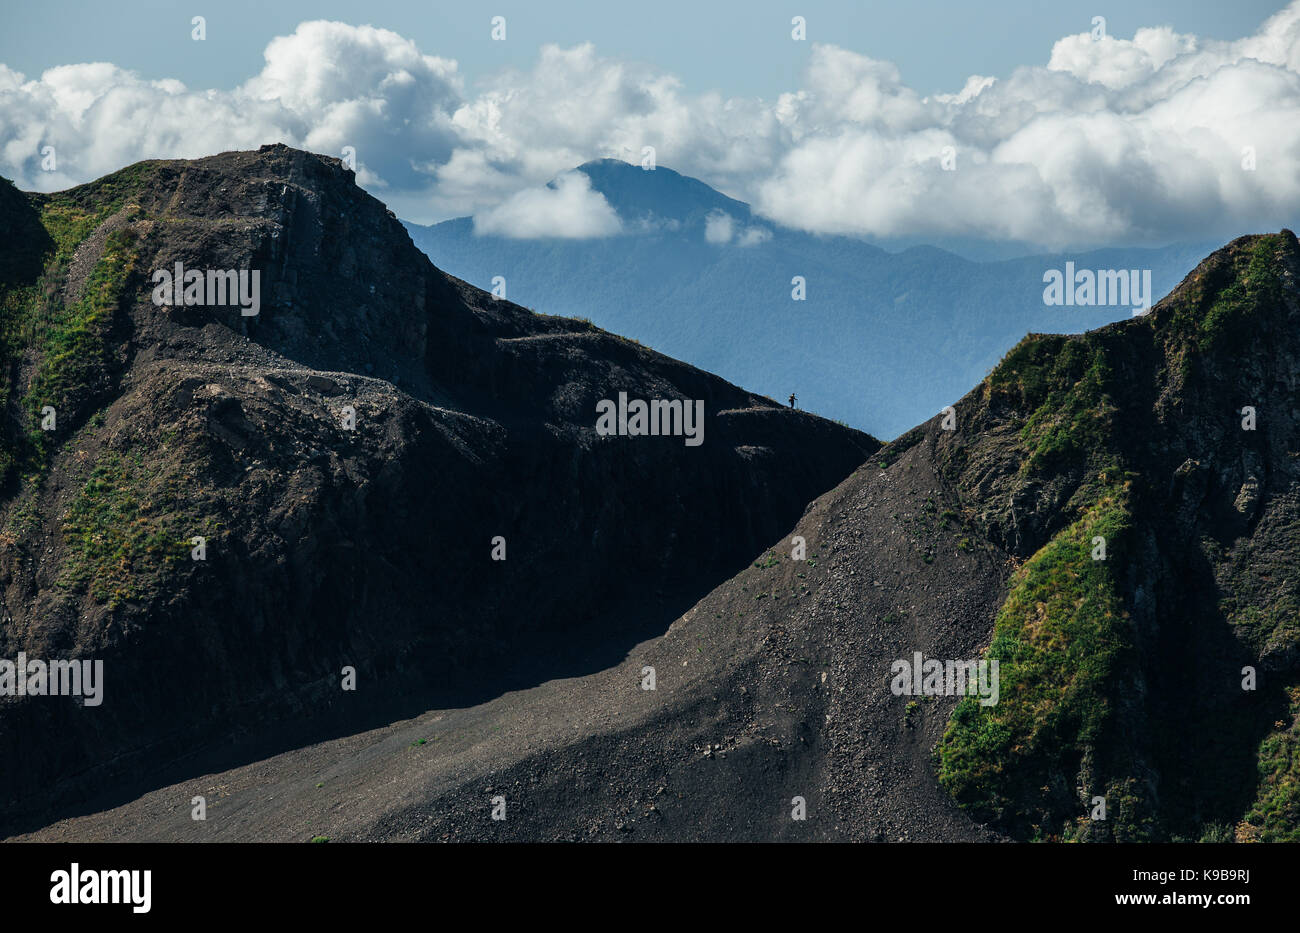 Beautiful mountain landscape. Stock Photo